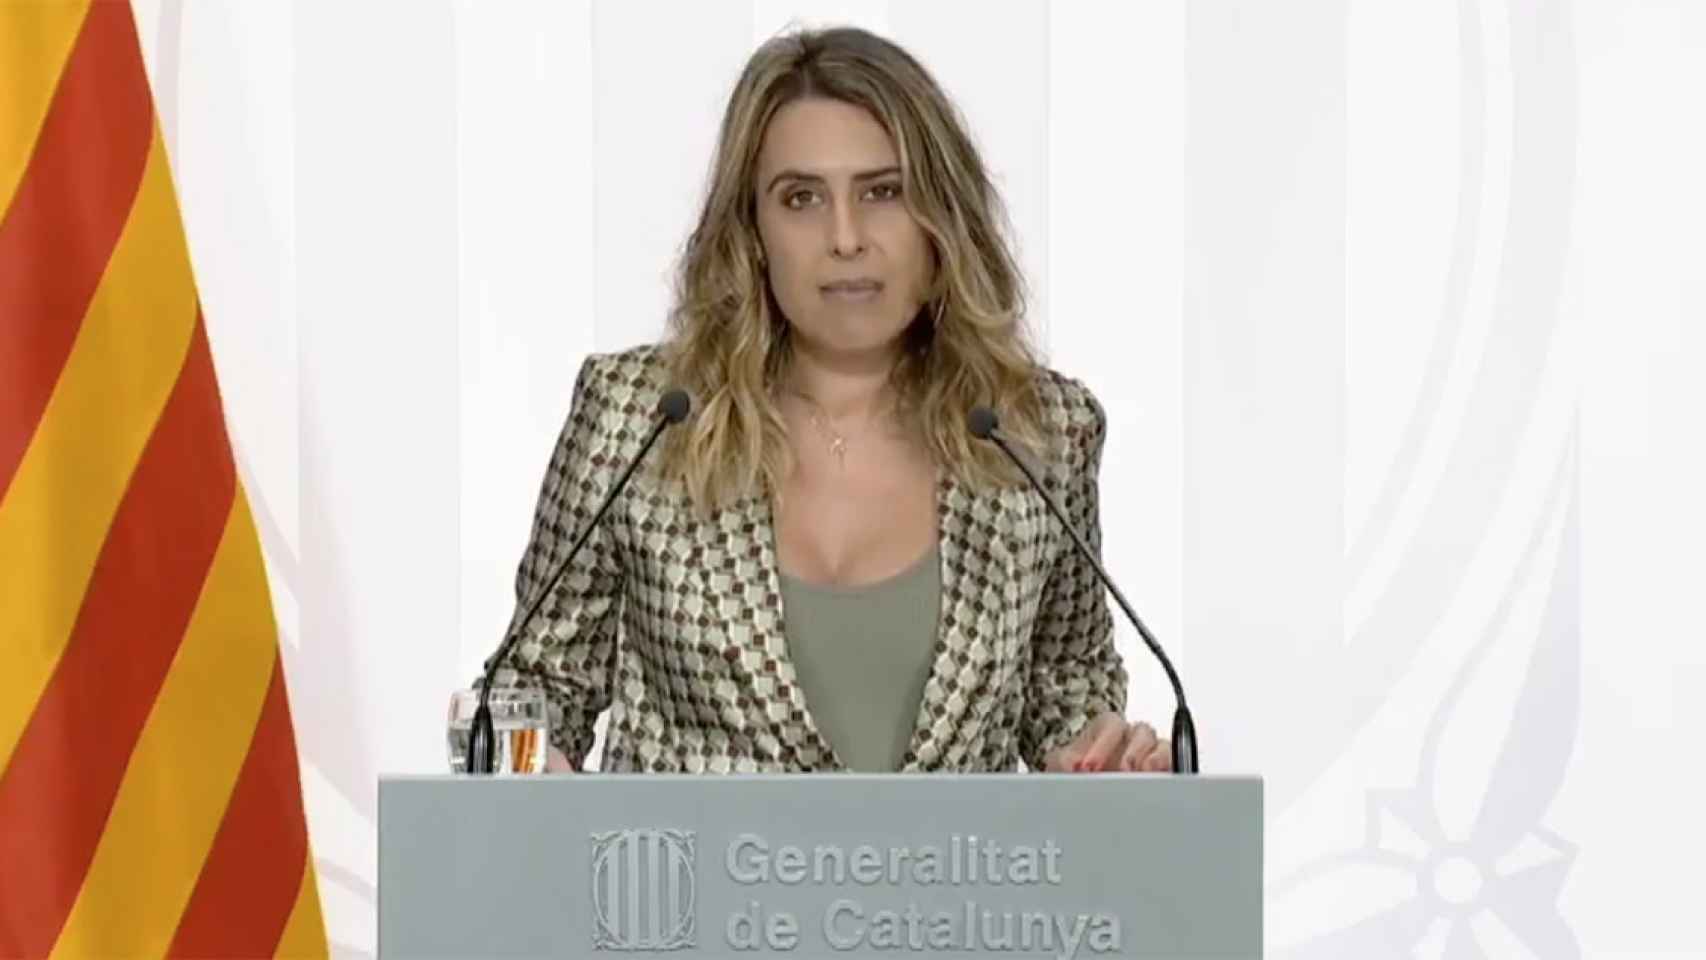 La portavoz del Govern, Patrícia Plaja, ha valorado la propuesta de referéndum de ERC